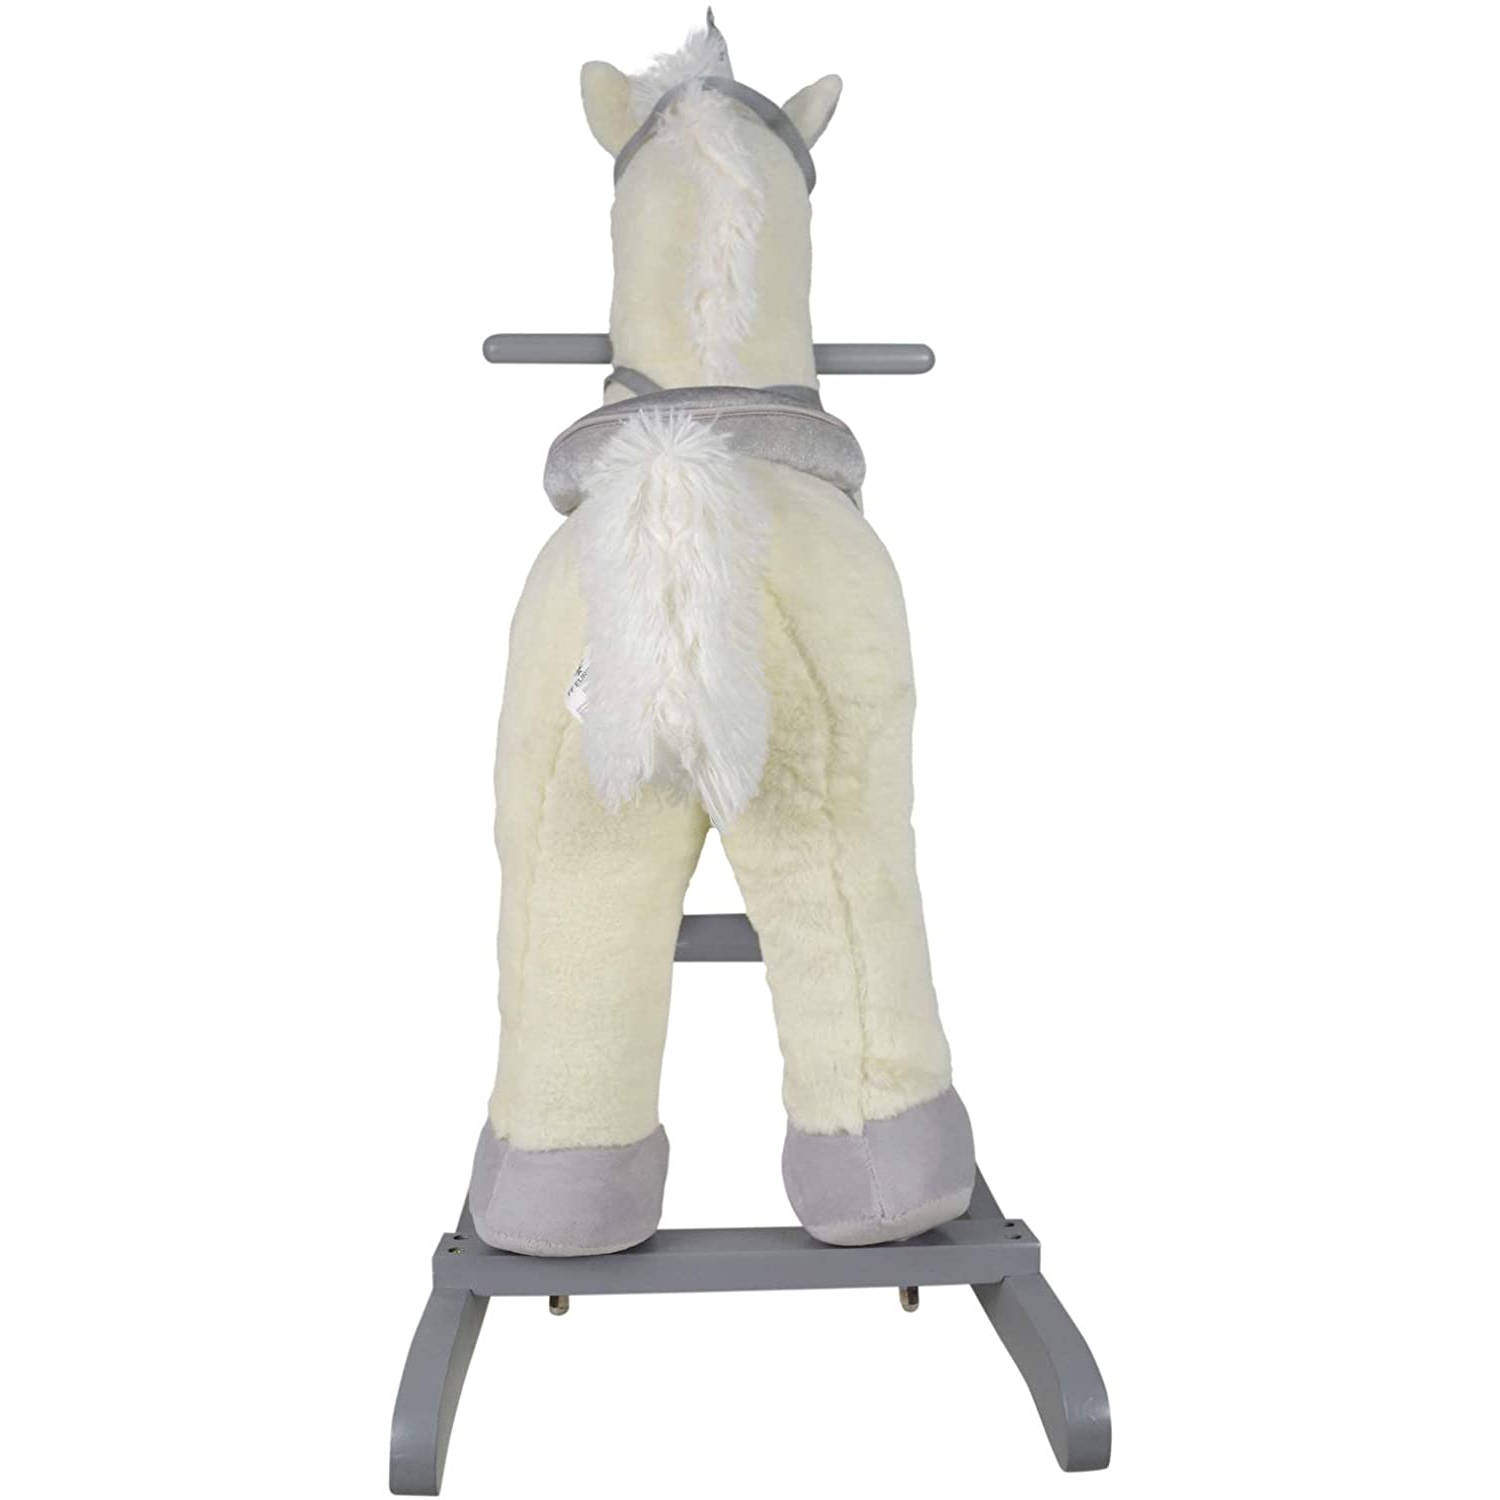 Infantastic - Hobbelpaard voor Kinderen - Schommelpaard Silver Unicorn - Stevige Constructie - Knuffelzacht met Geluidseffecten - Zilveren Eenhoorn